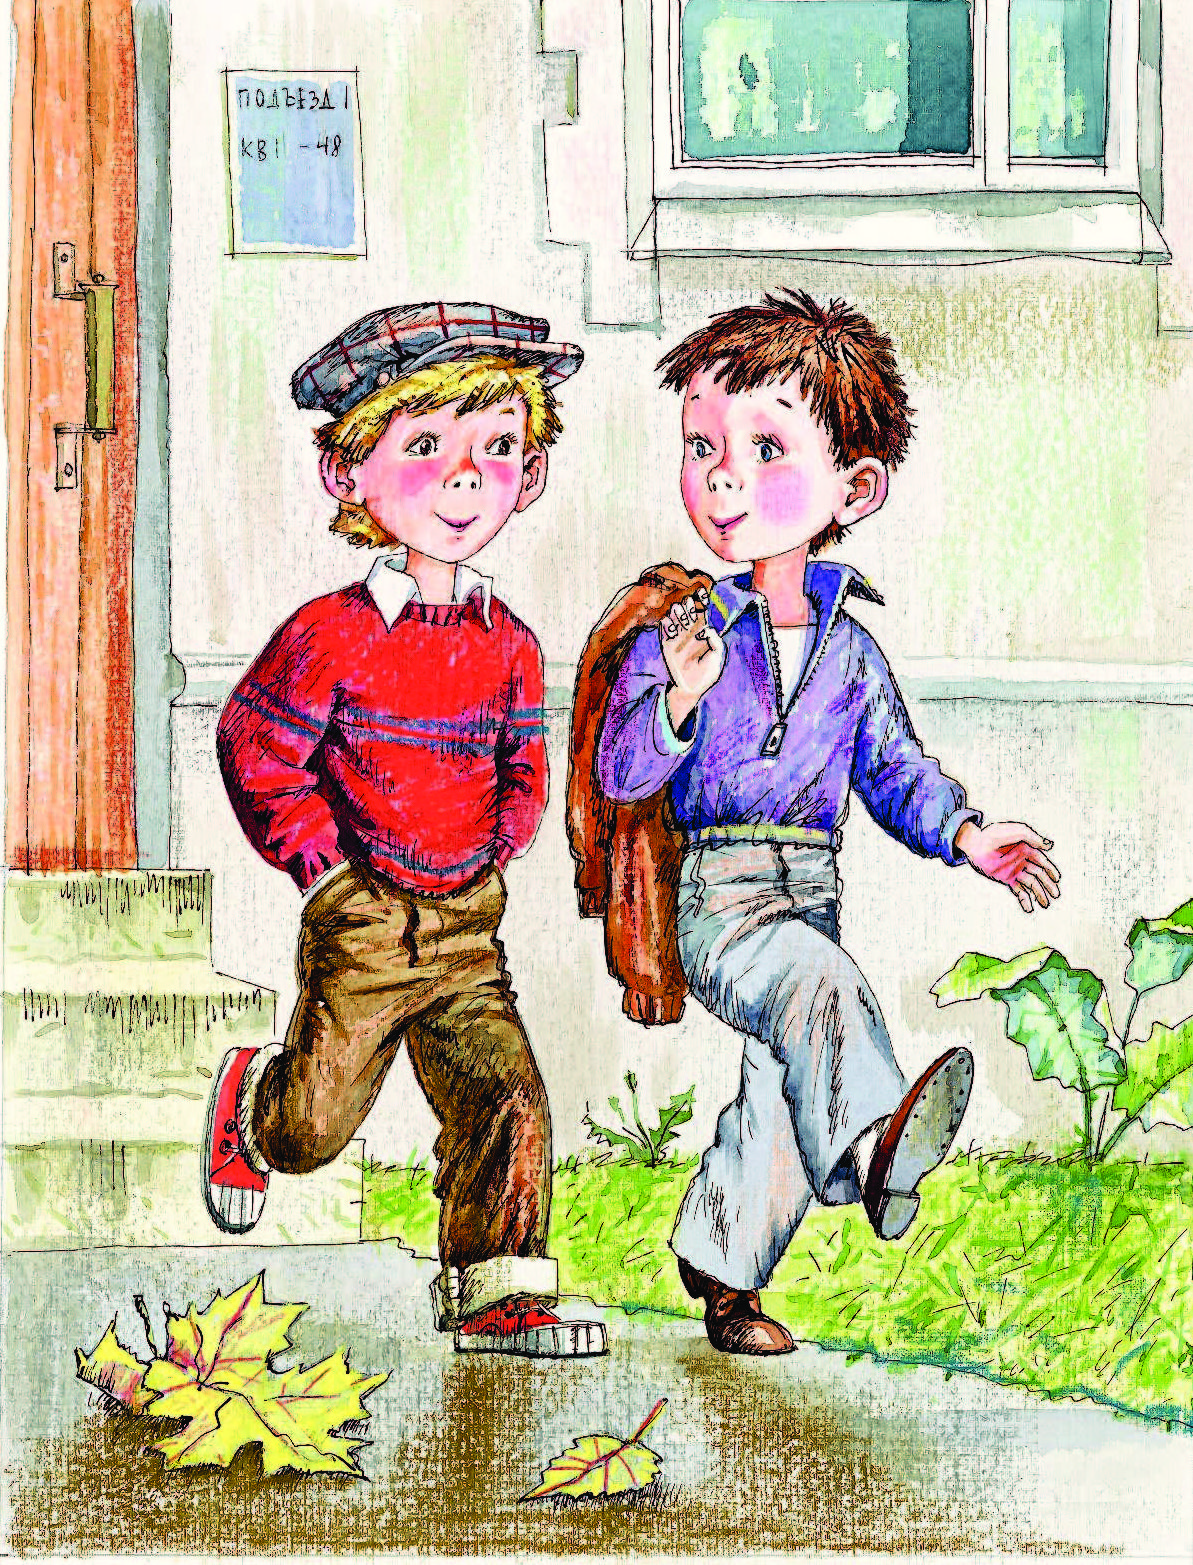 Рассказ про пацана. Мальчик идет. Два мальчика рисунок. Два мальчика идут в школу. Два мальчика идут по улице.